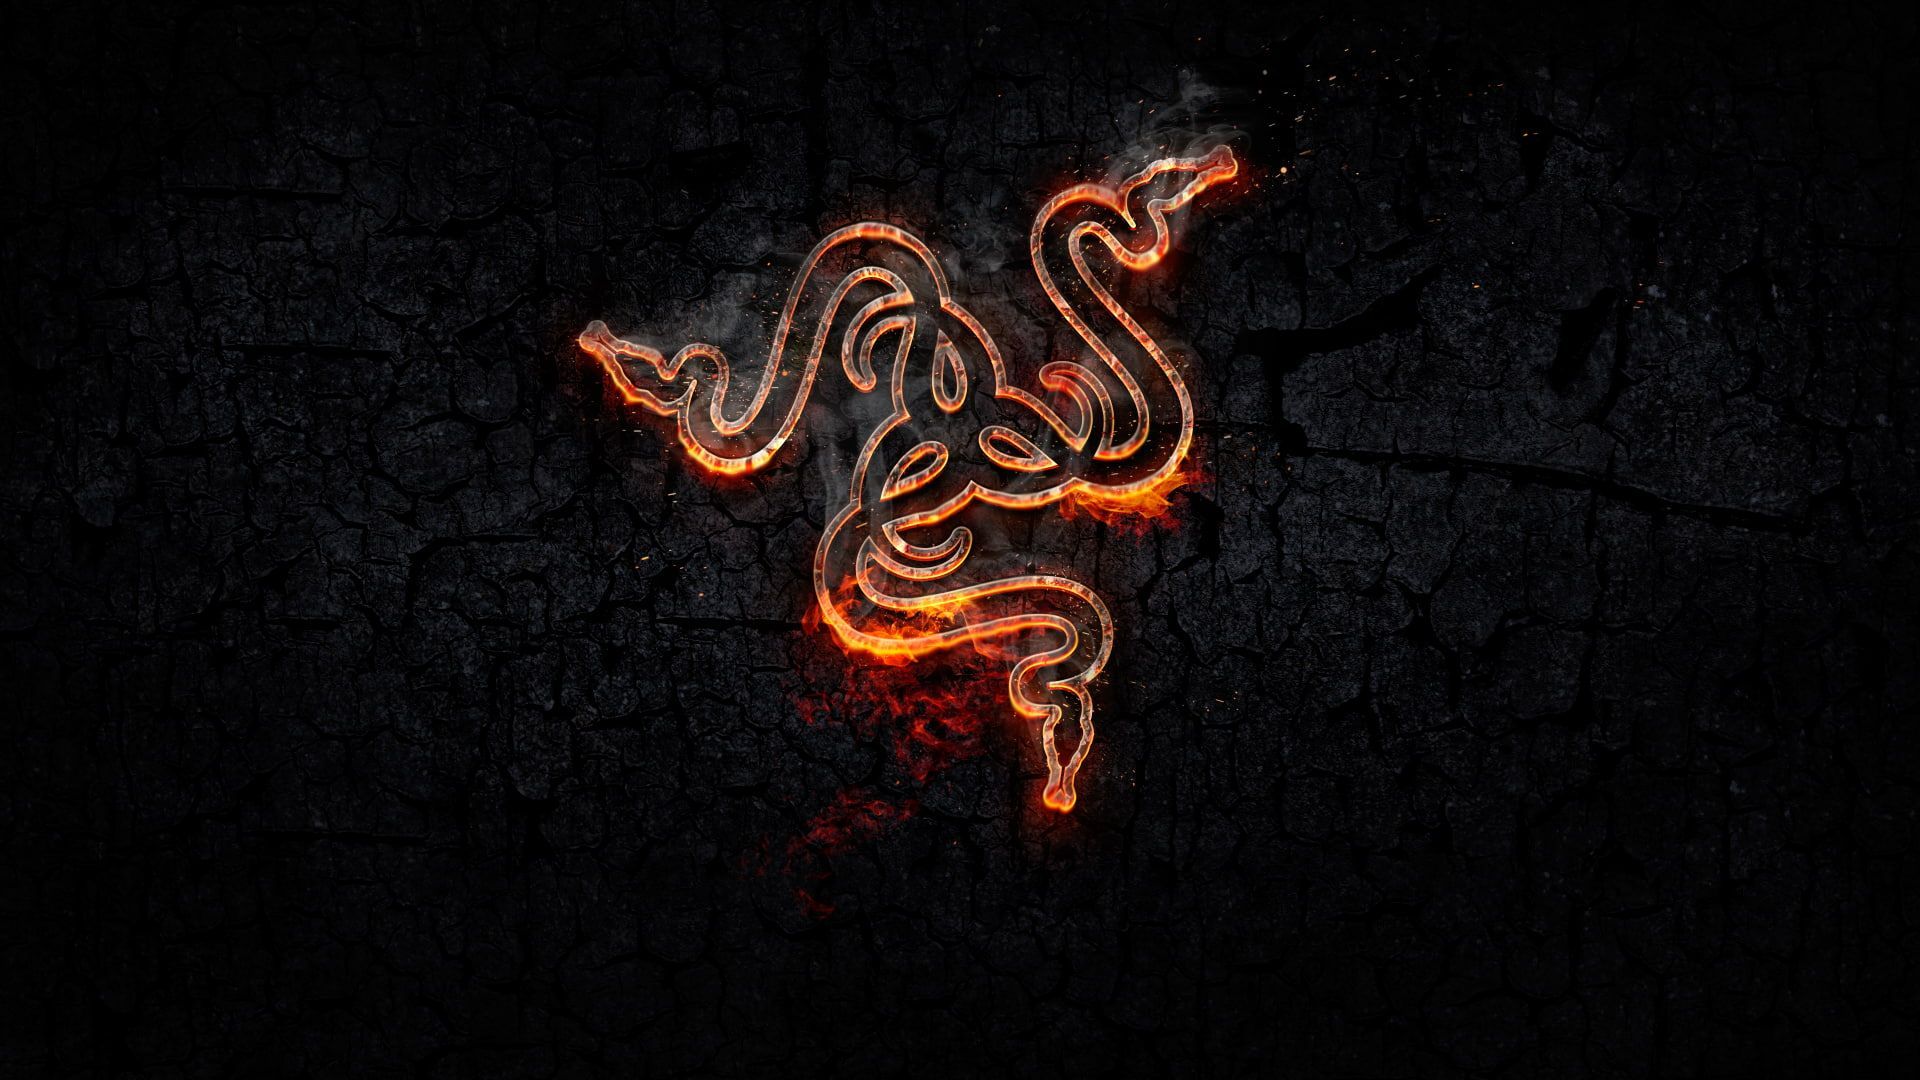 Razer Inc. #Razer #logo #snake Gaming Series #orange P #wallpaper #hdwallpaper #d. Papel de parede pc, computador, Papel de parede celulae